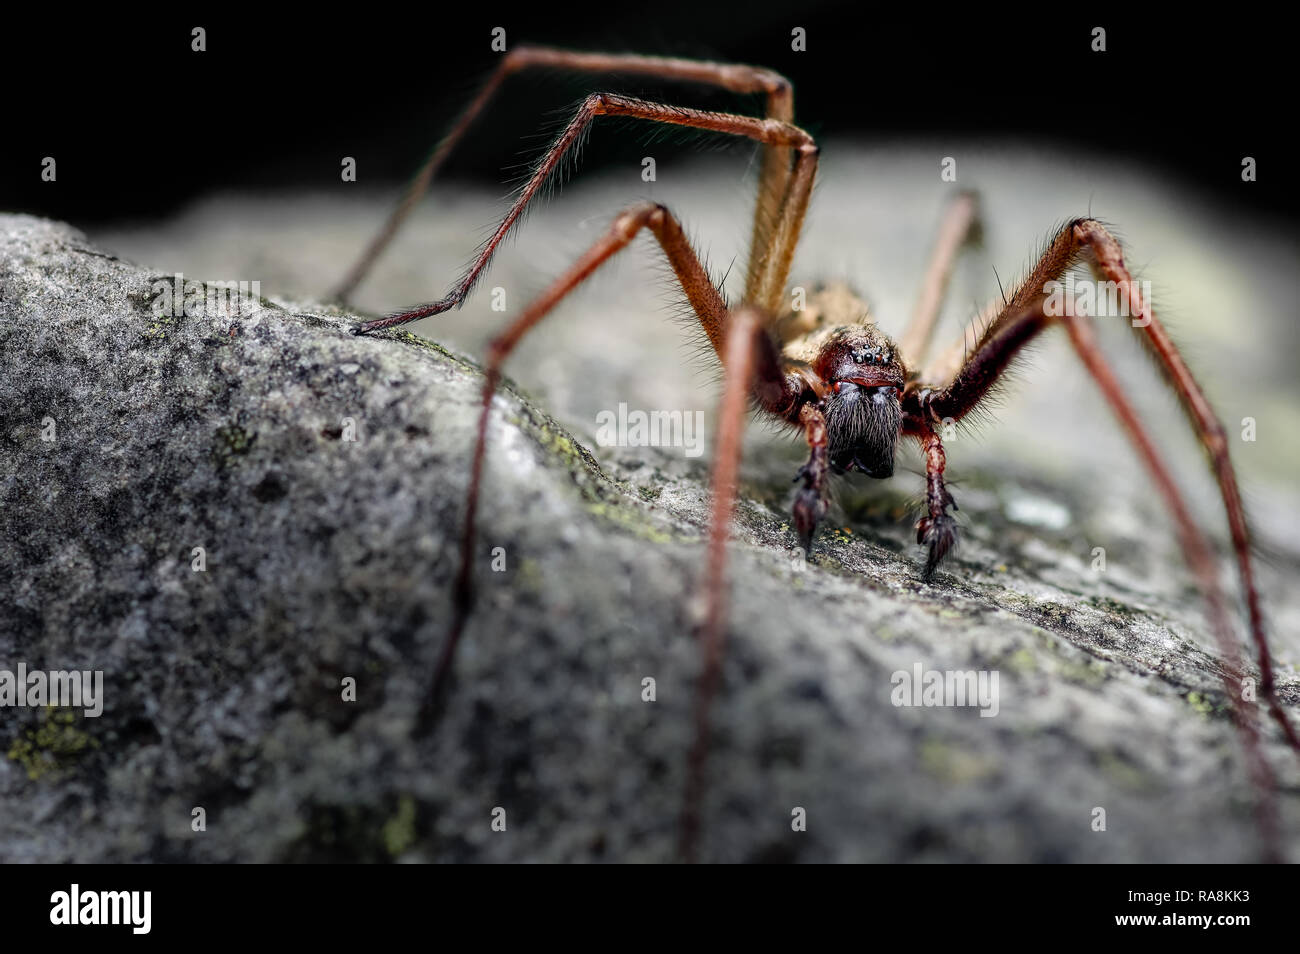 Esta es una casa gigante masculino araña Tegenaria atrica Eratigena gigantea llama ahora. Es normal ver el macho como la hembra permanece oculta. Foto de stock